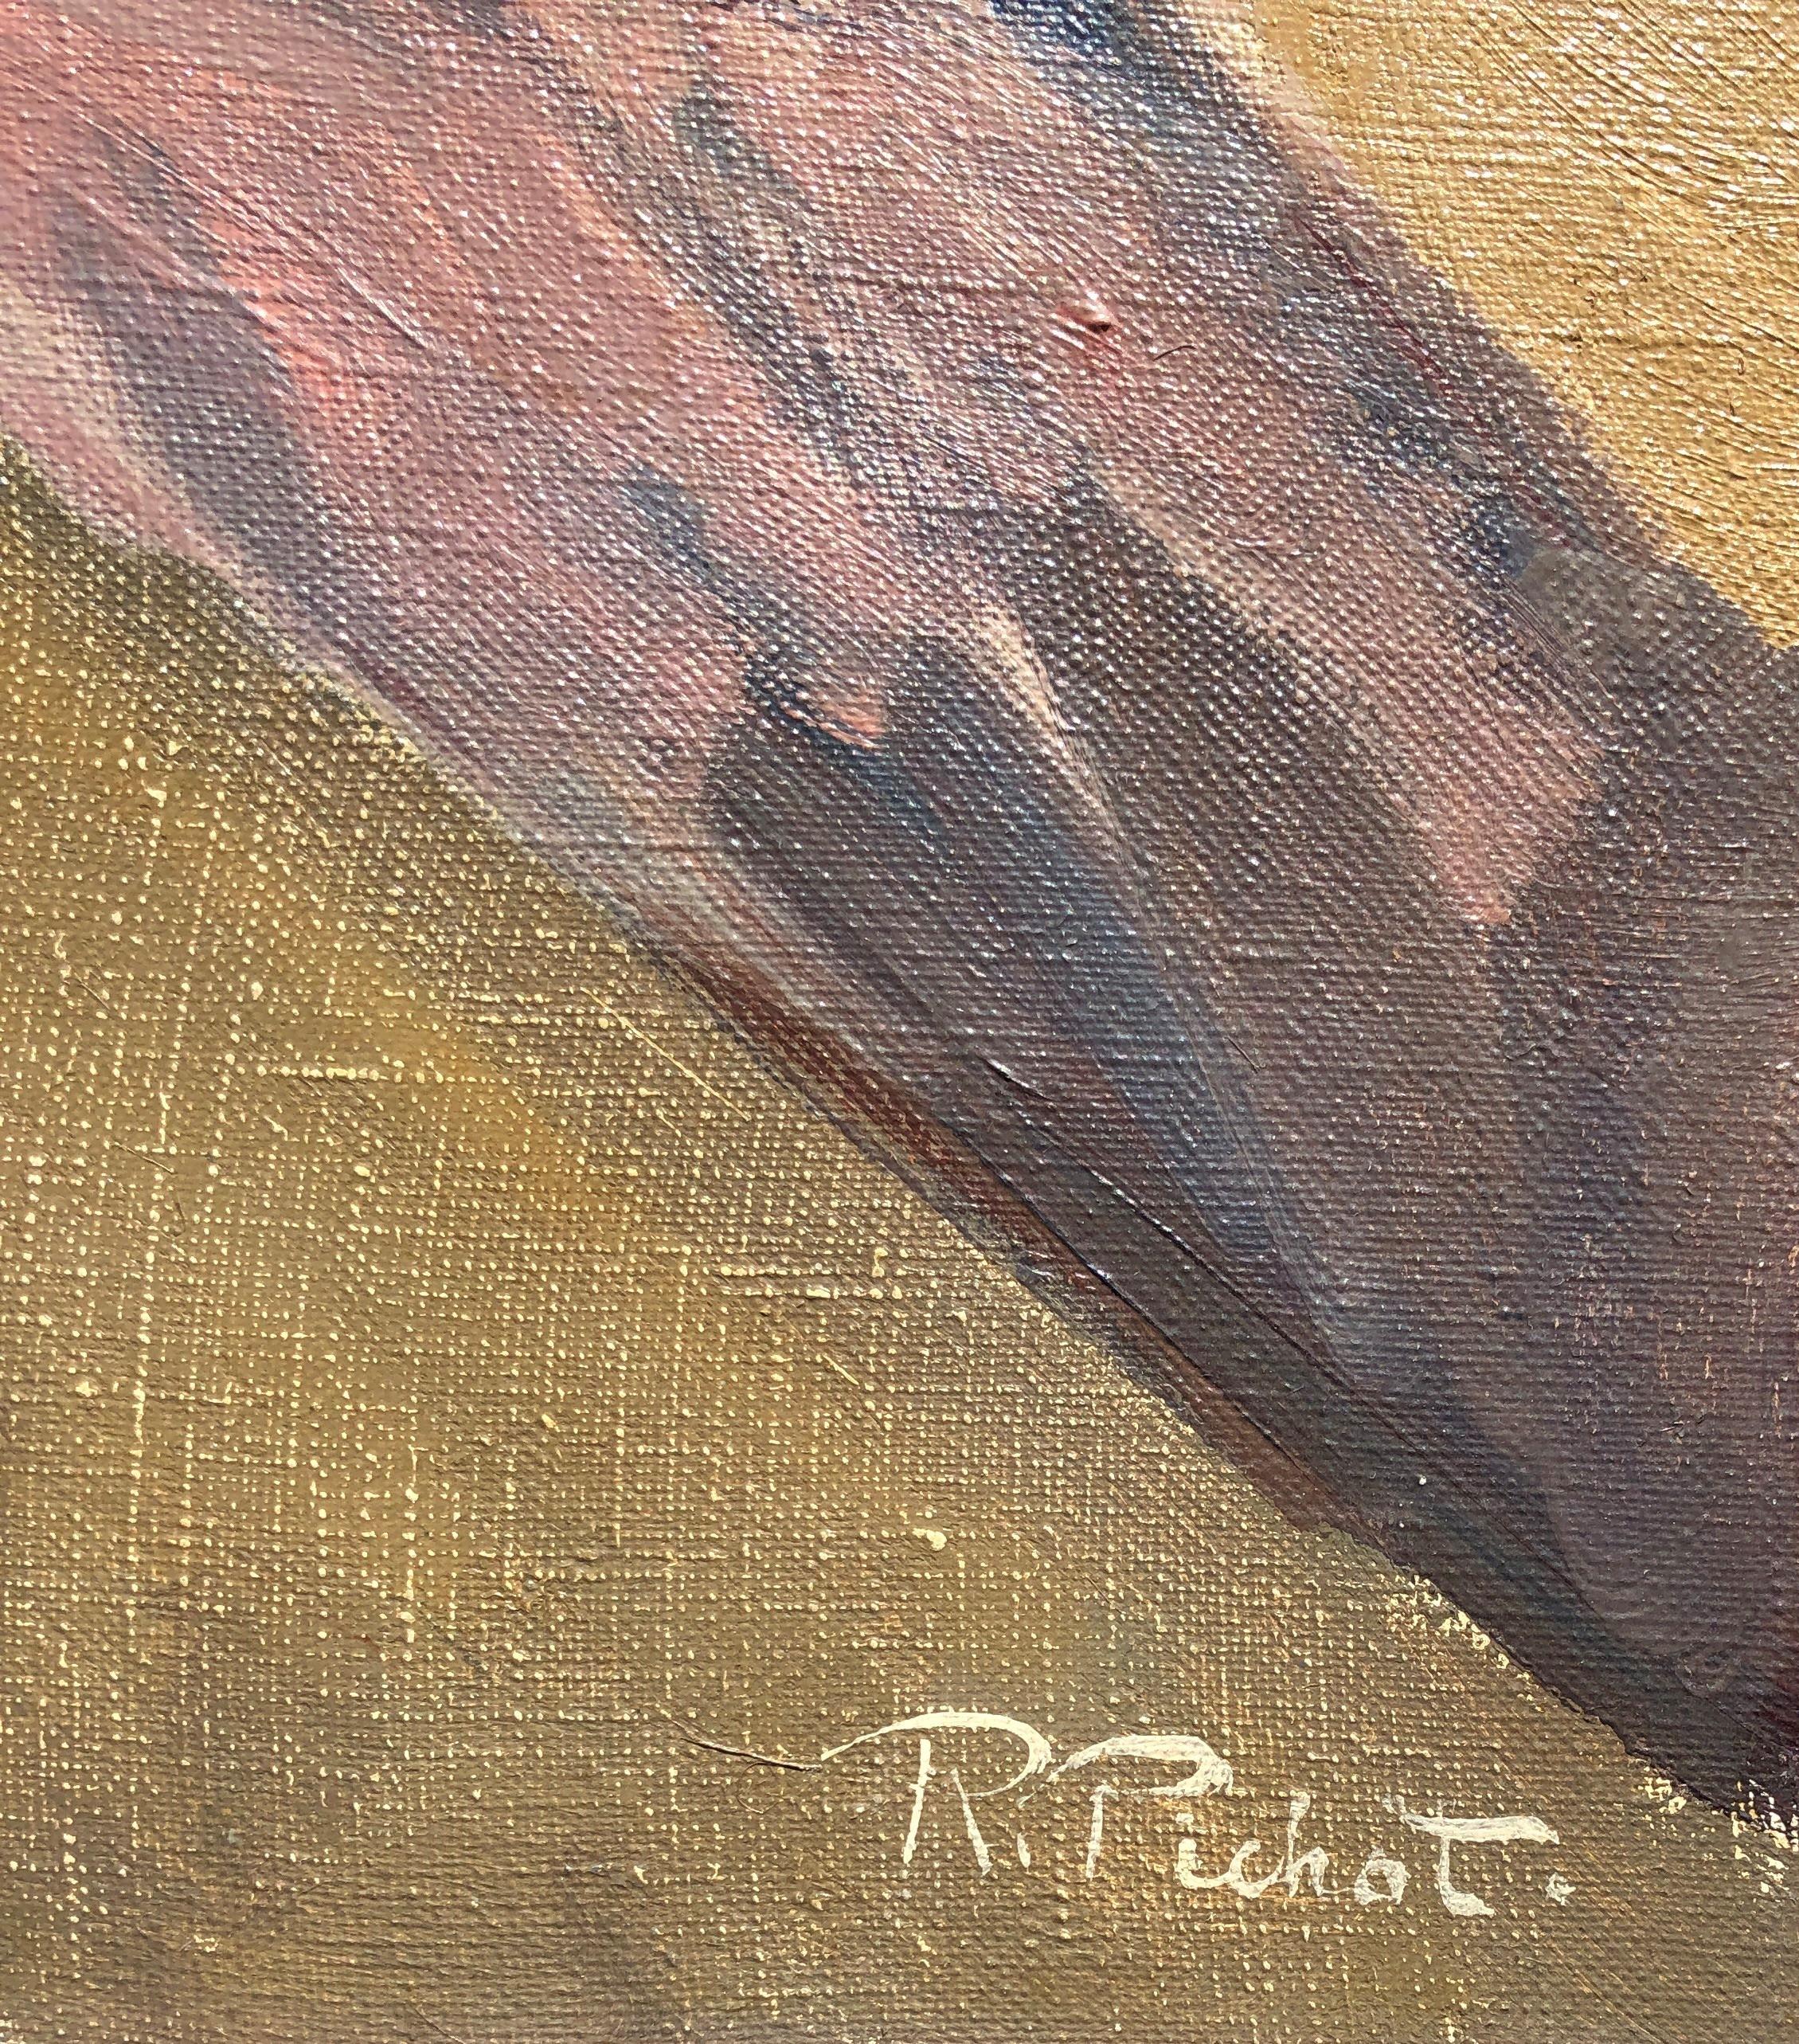 Ramn Pichot - Peinture à l'huile originale d'un nu féminin sur toile:: circa 1960 - Painting de Ramon Pichot i Soler